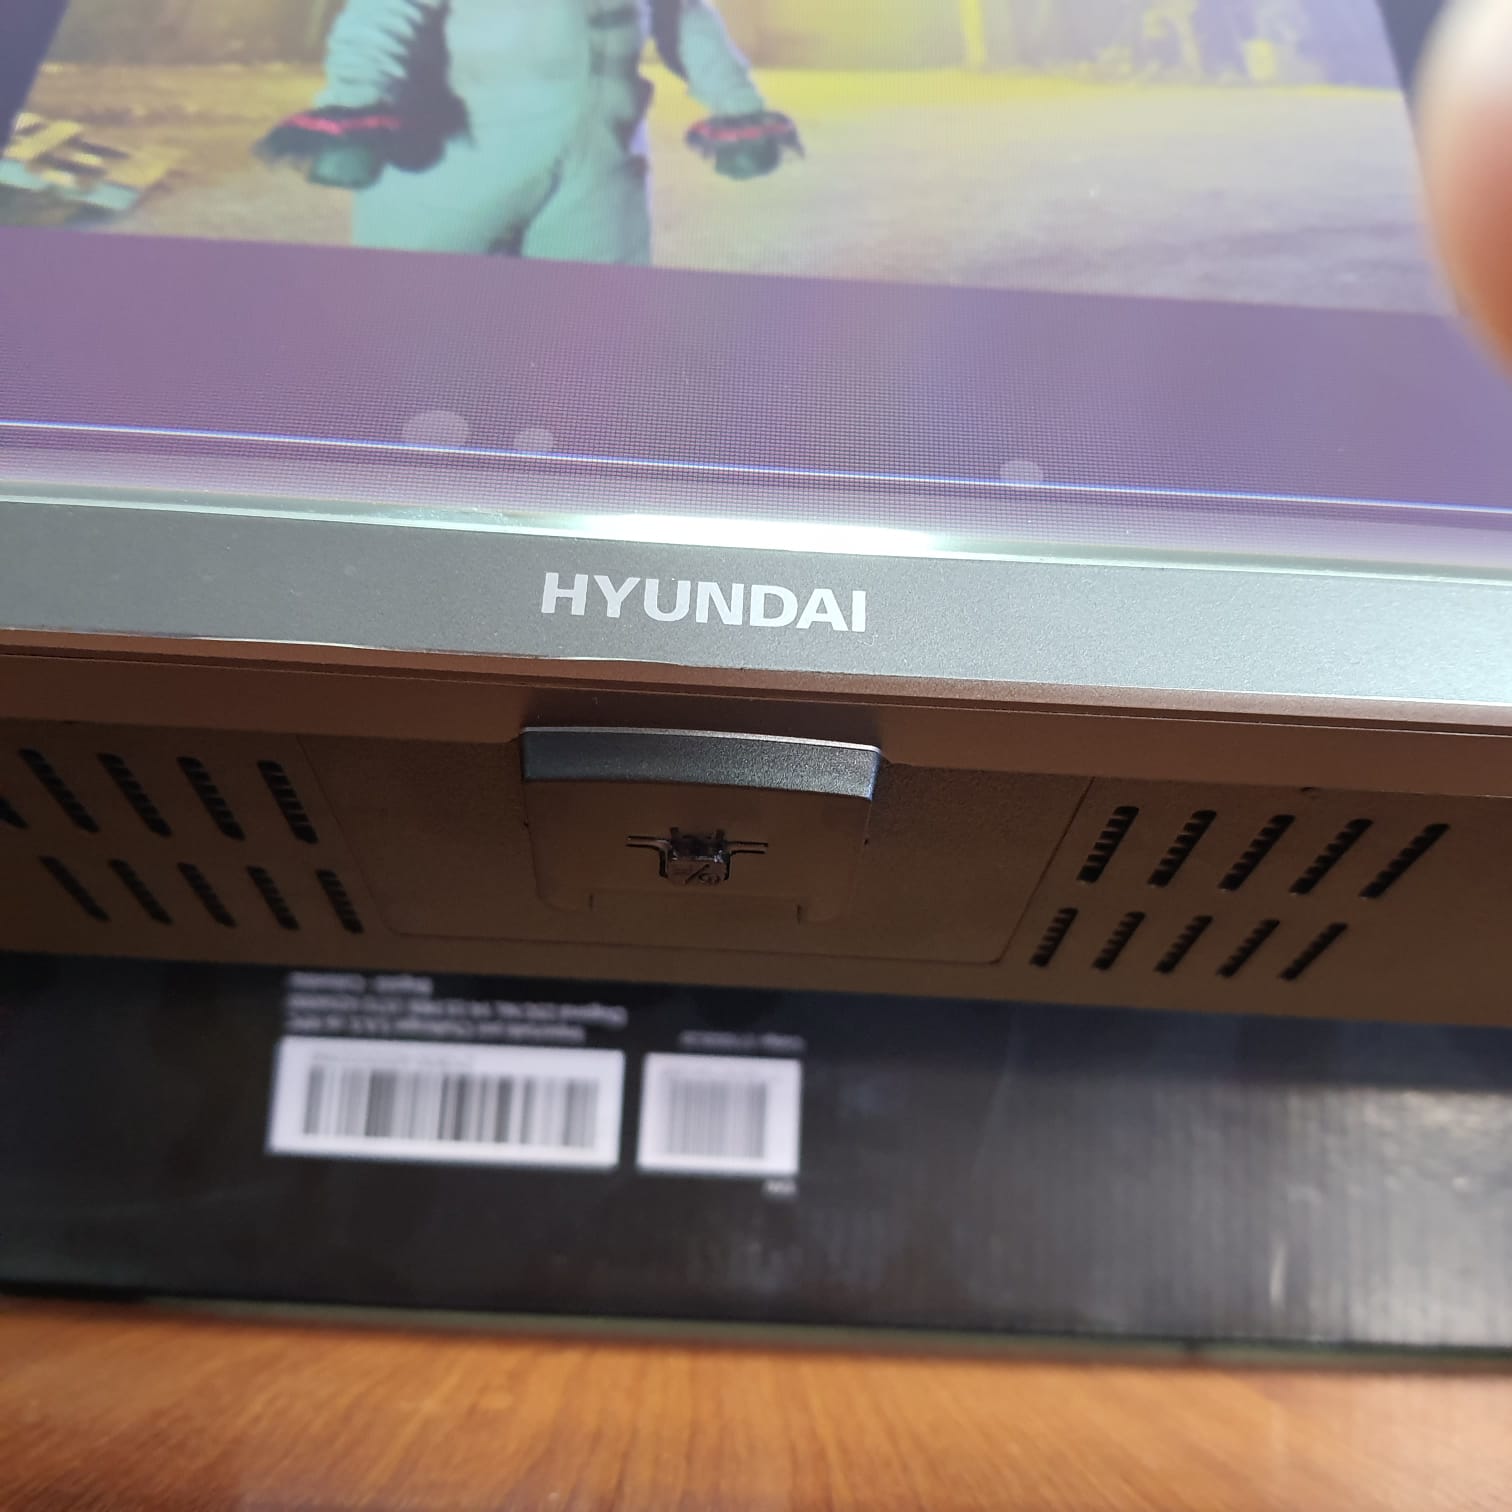 Televisor Hyundai 32 Pulgadas LED HD Google TV HYLED3254GIM